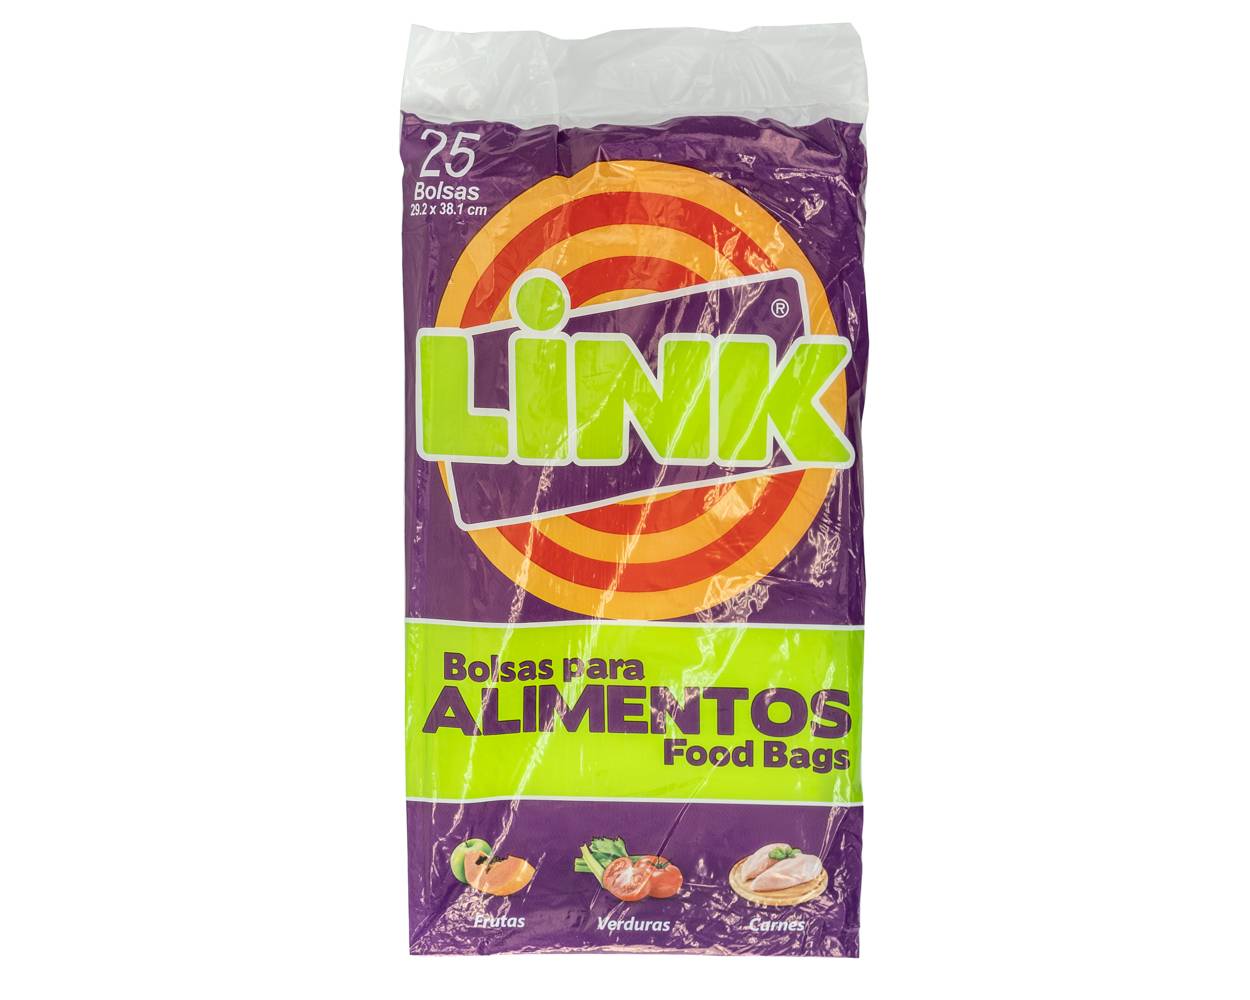 Link bolsa para alimentos (bolsa 25 unids)